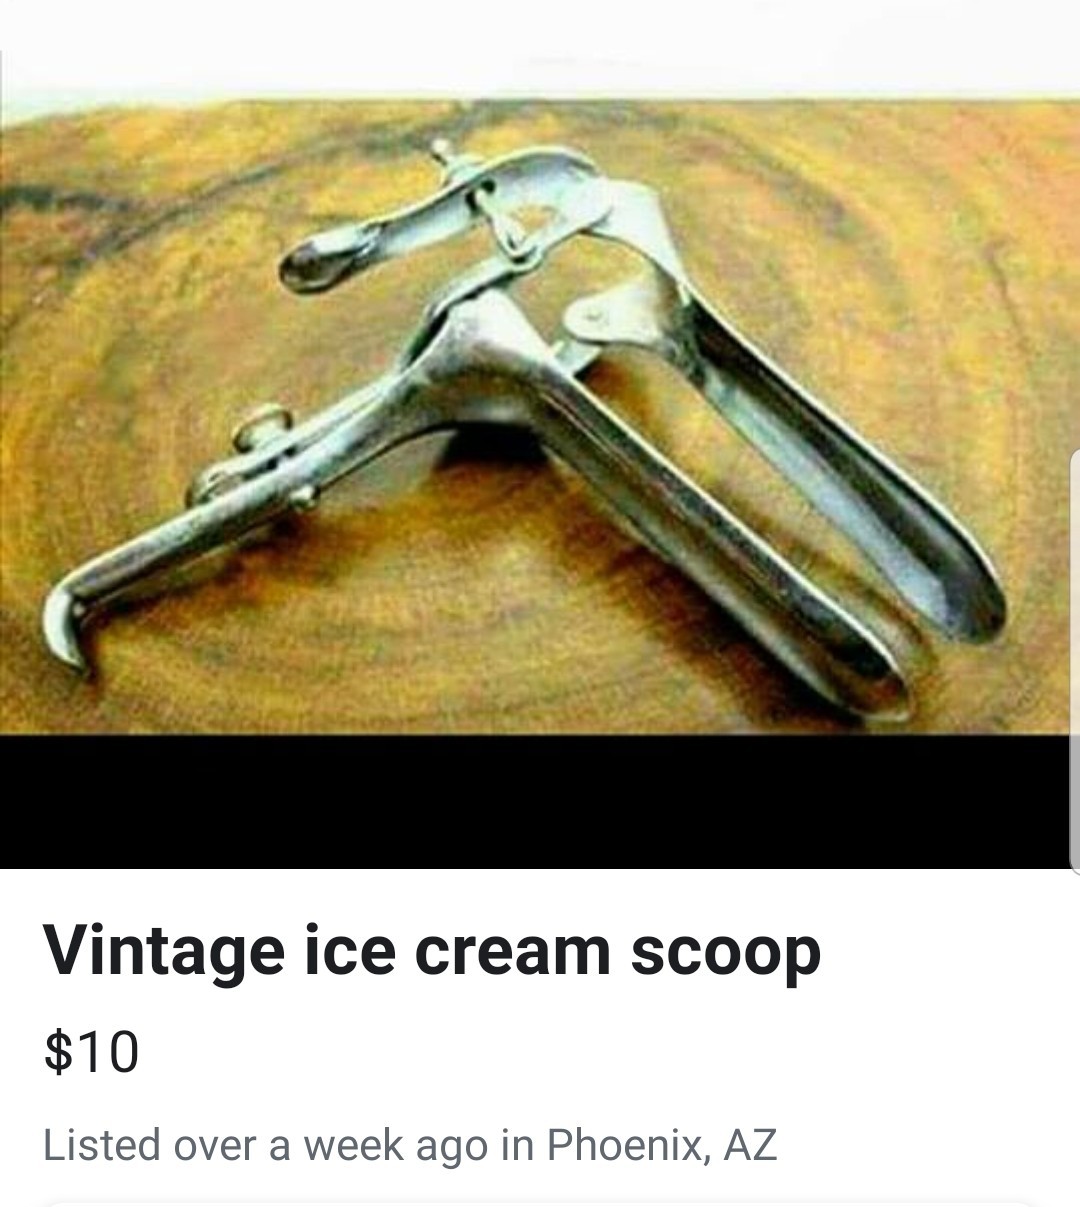 "Ice cream scoop" - meme